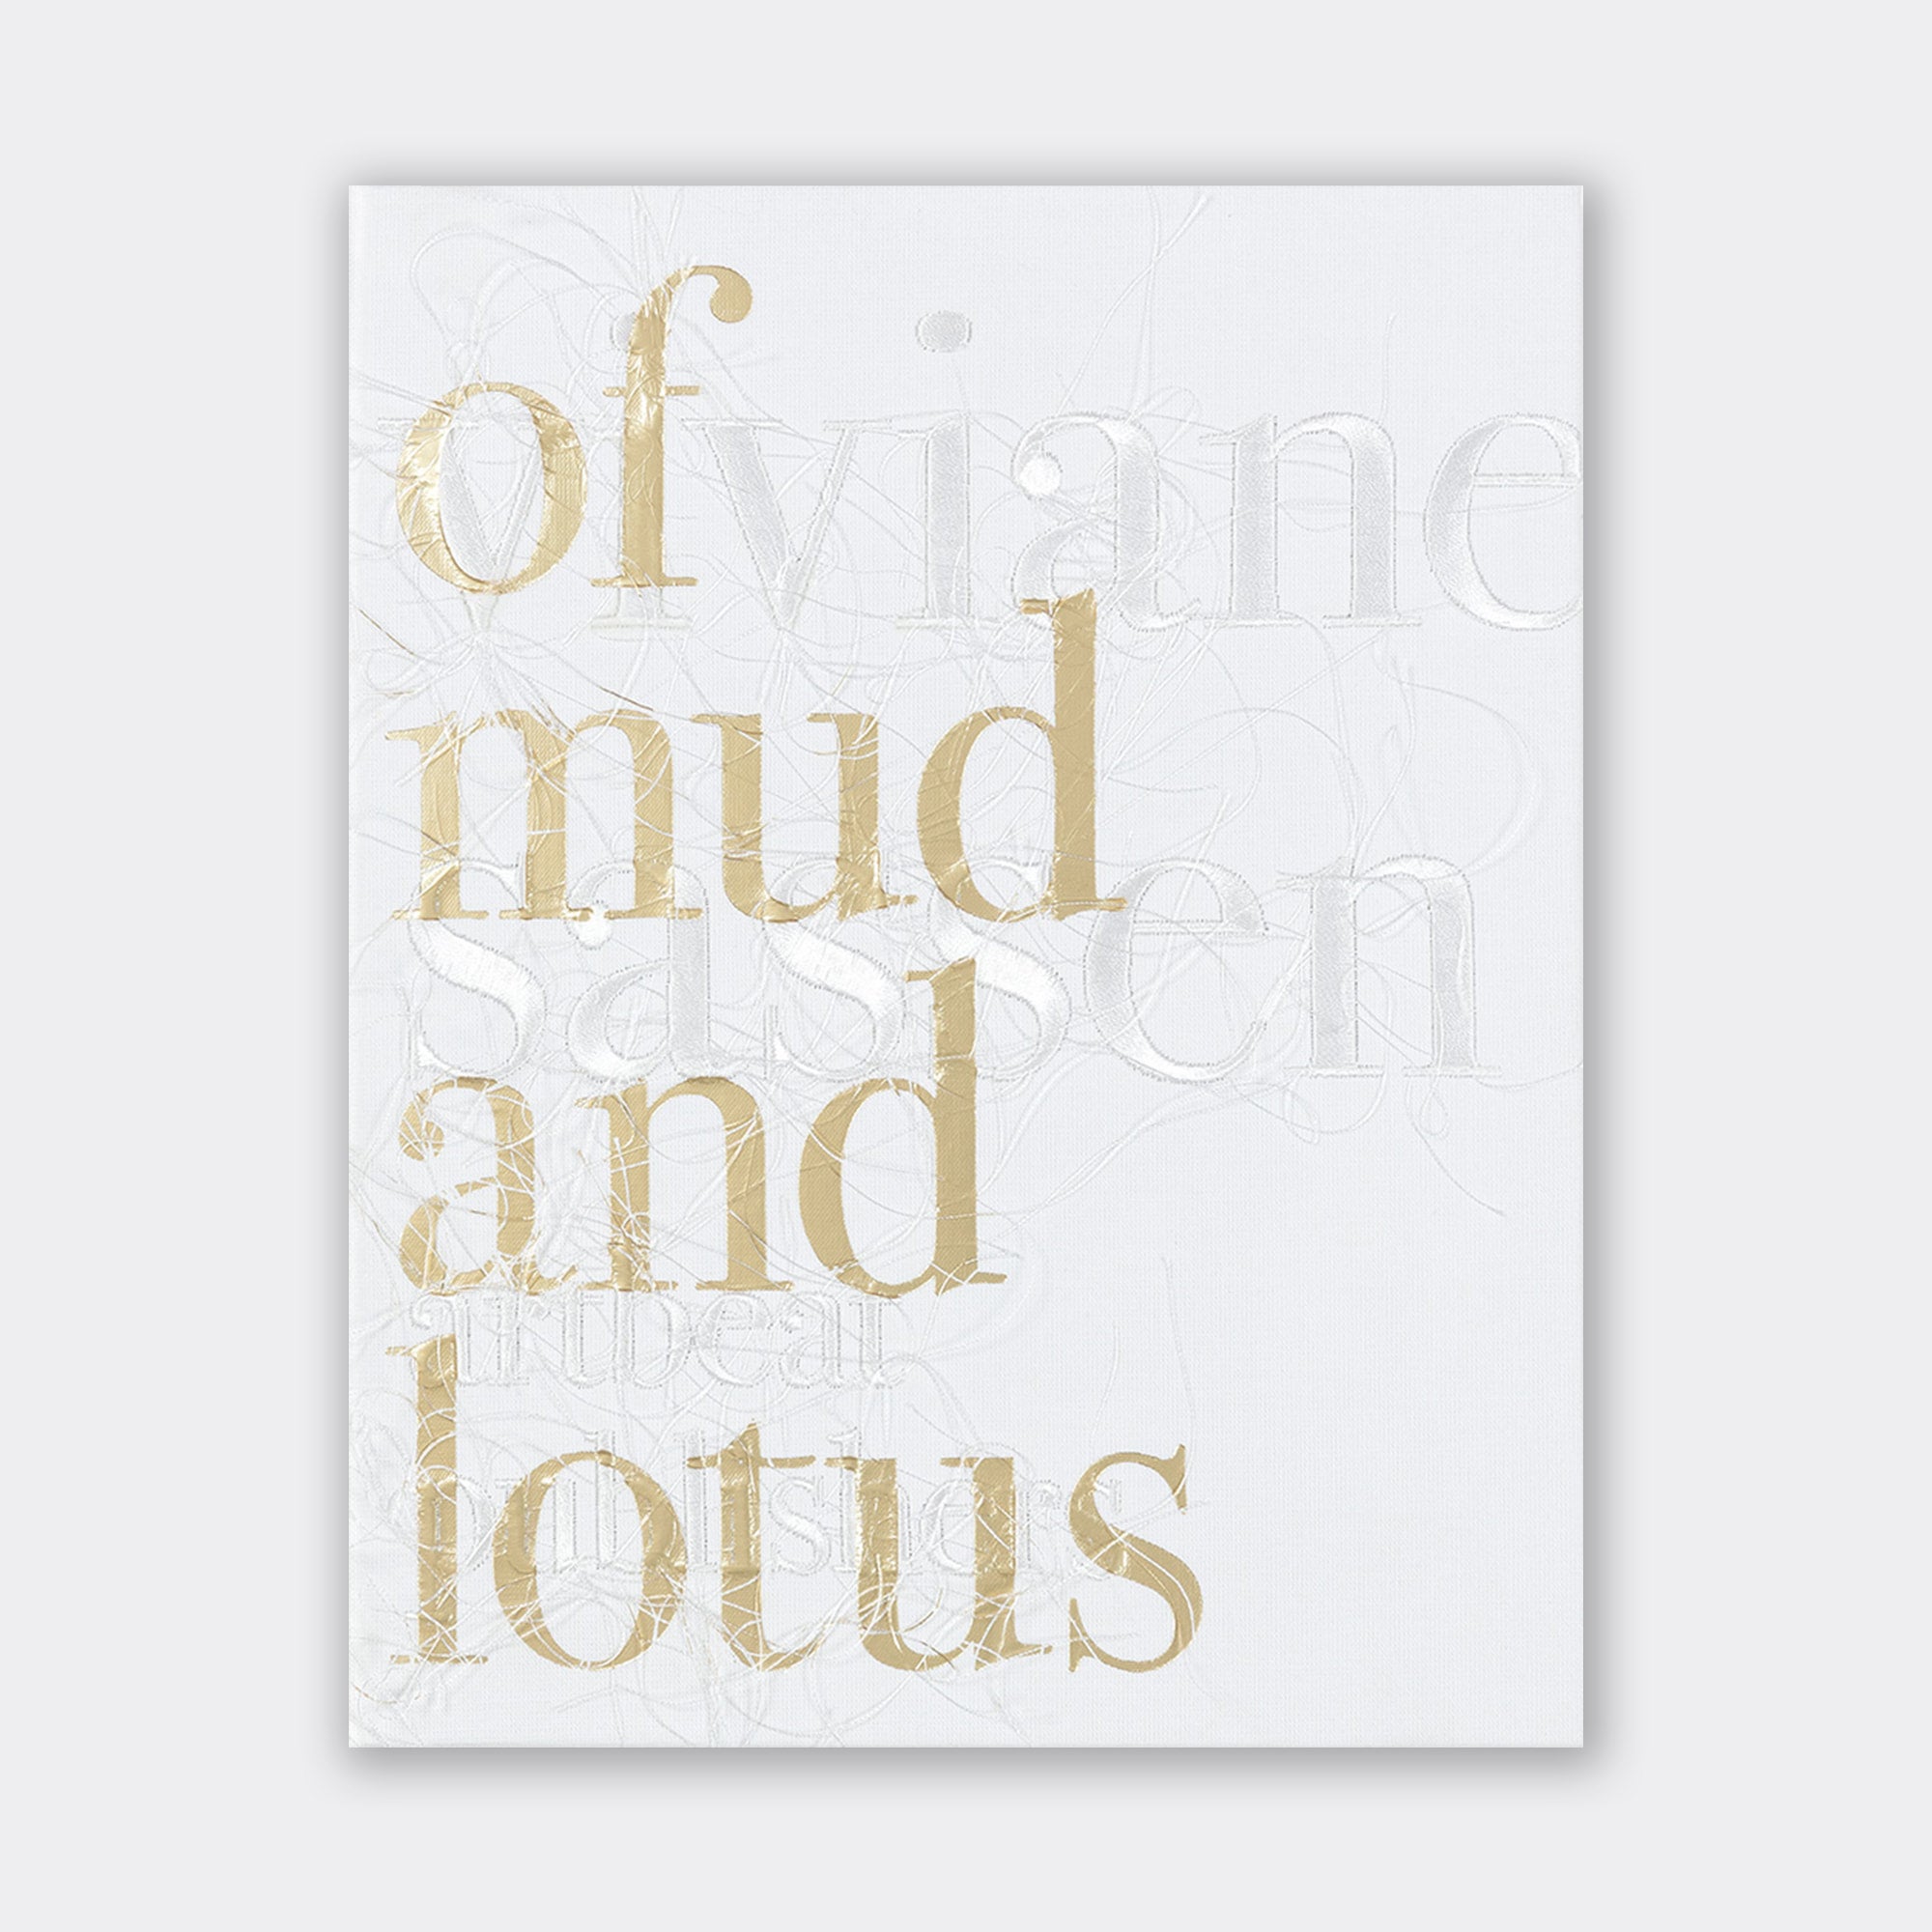 Viviane Sassen “Of Mud and Lotus” （G/P Gallery） ｜Tokyo Art Beat